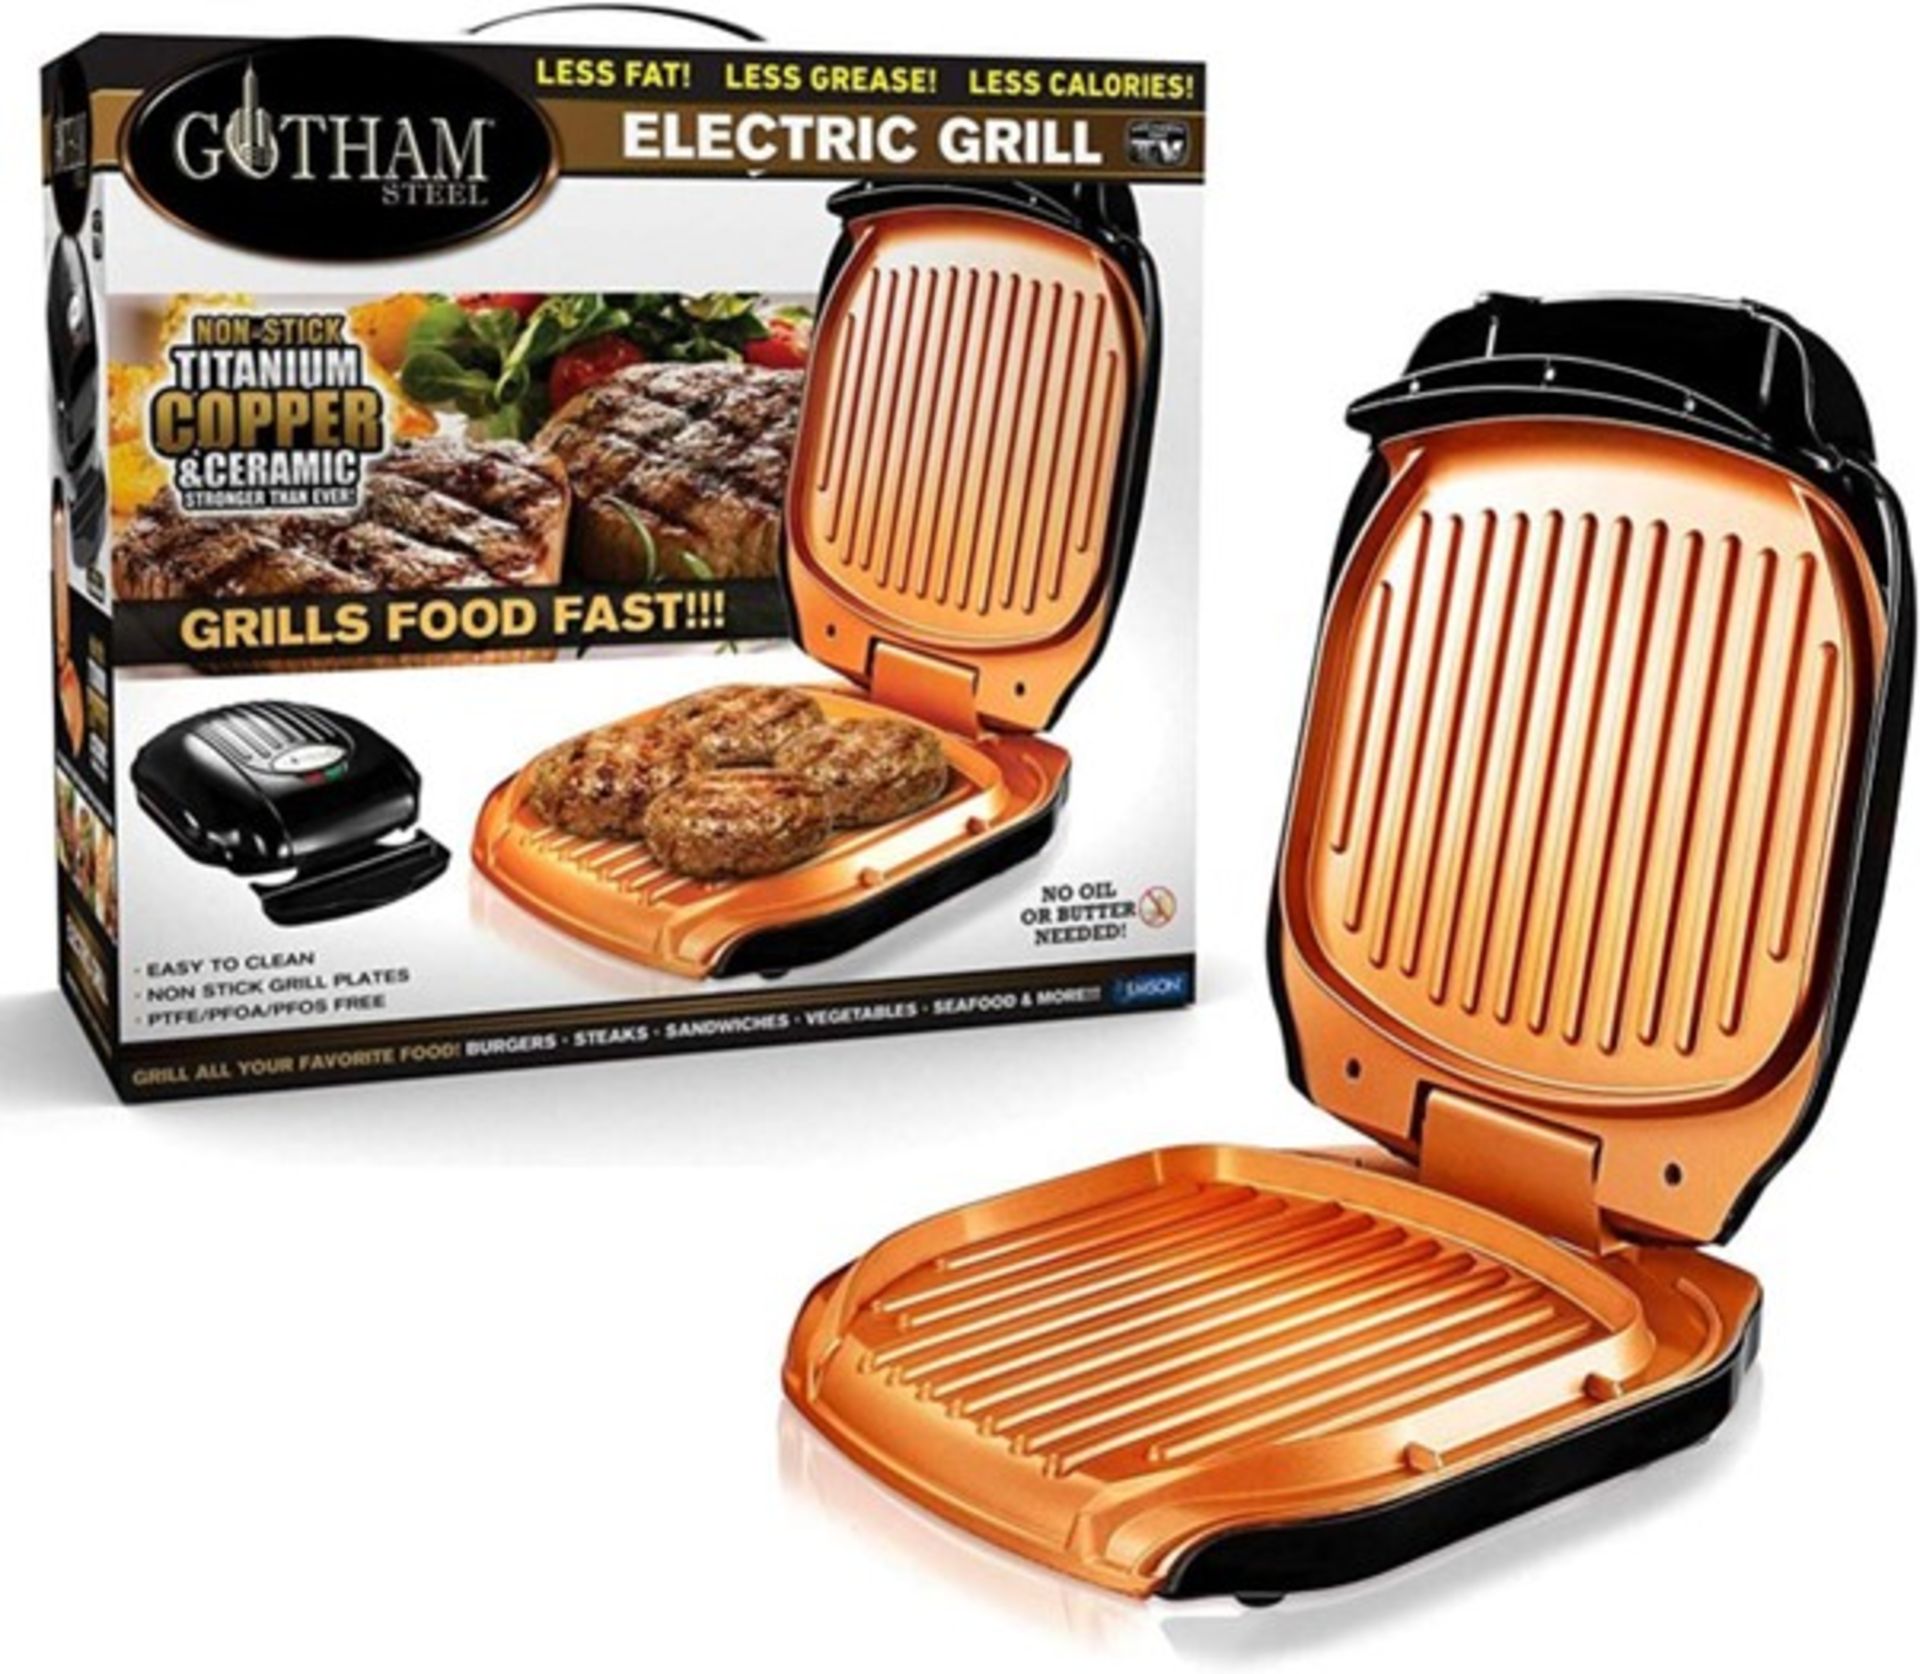 New Gotham Non-Stick Titanium Copper & Ceramic Non-Stick Electric Grill